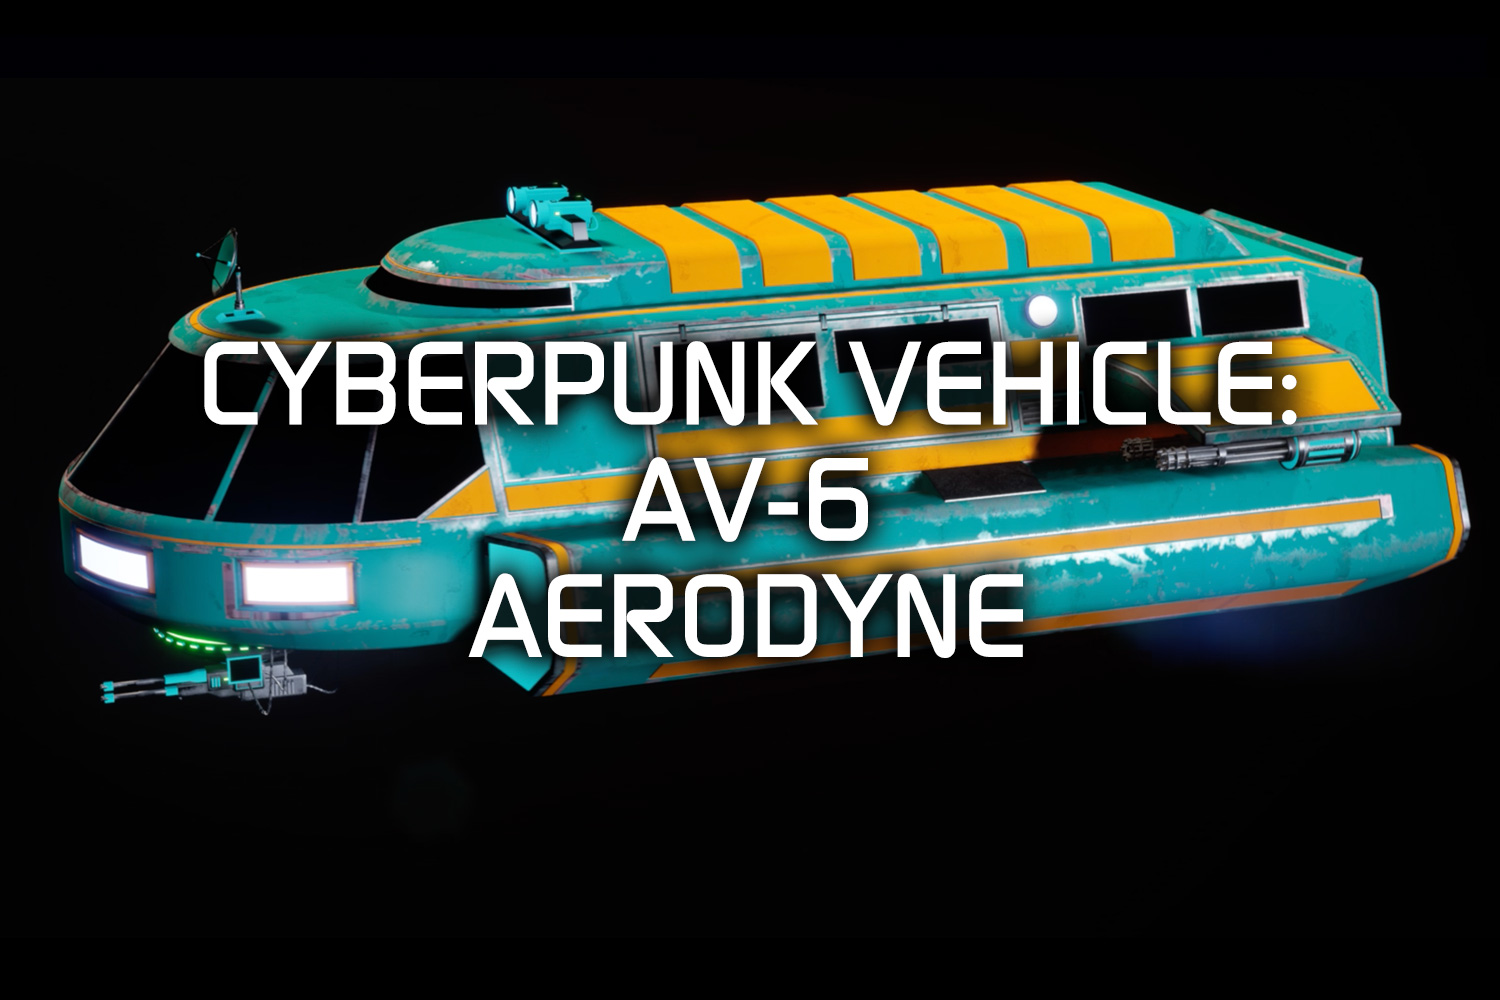 AV-6 AERODYNE